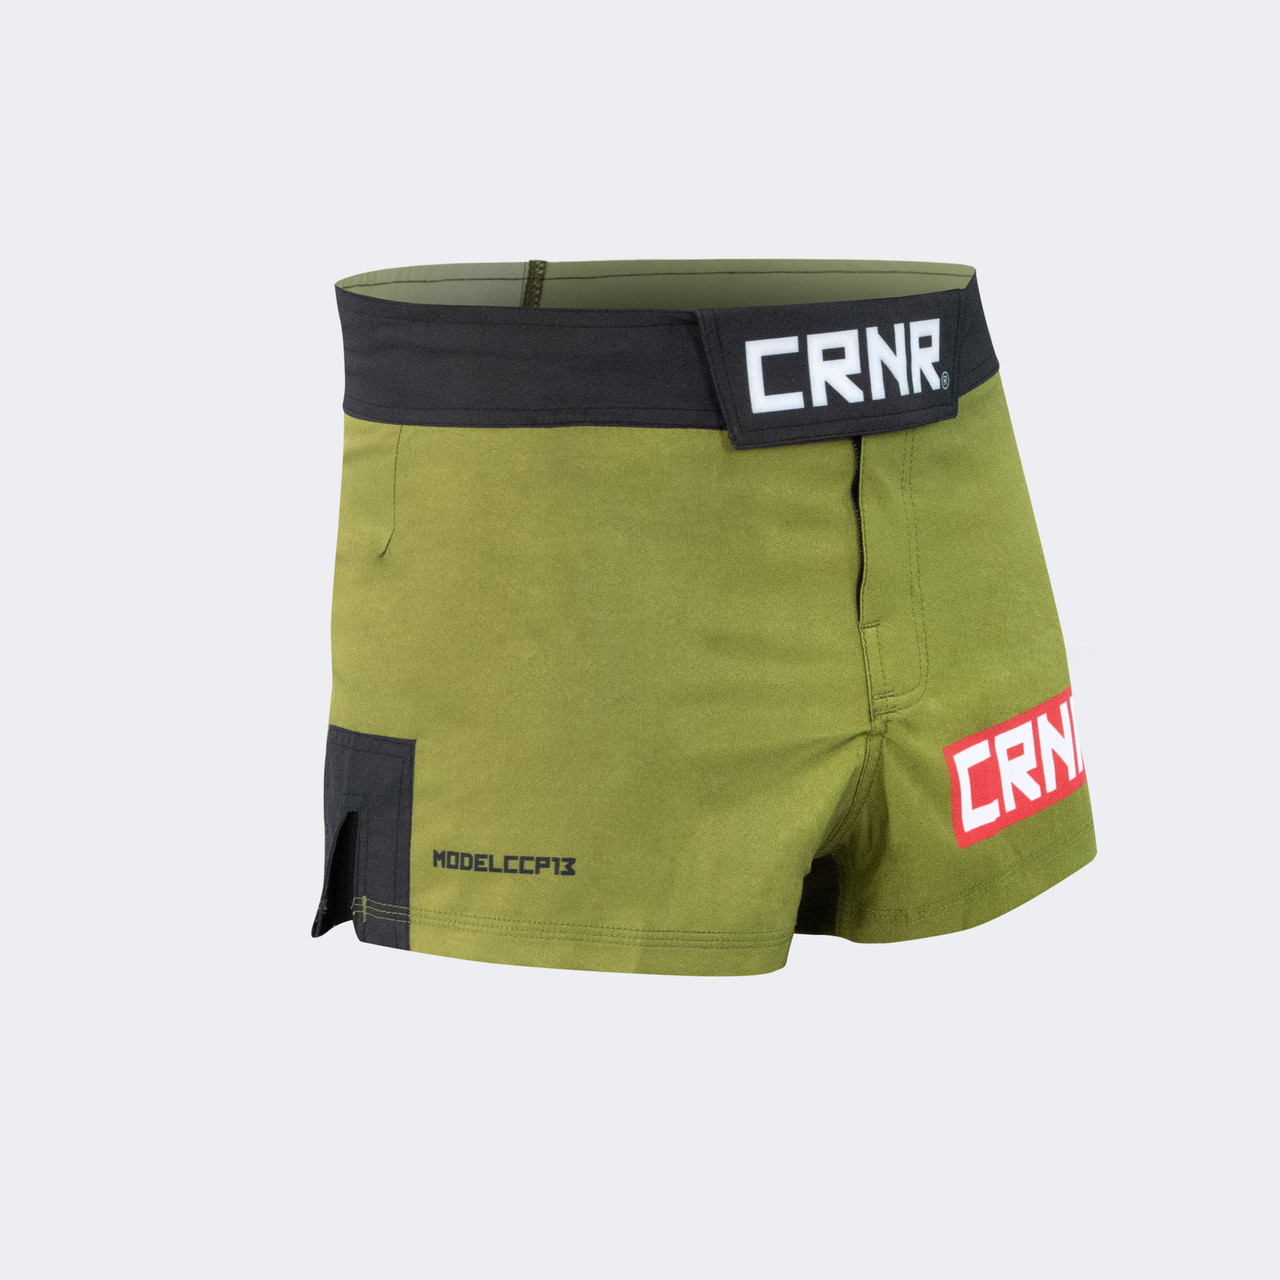 MMA-Shorts “COMBat”